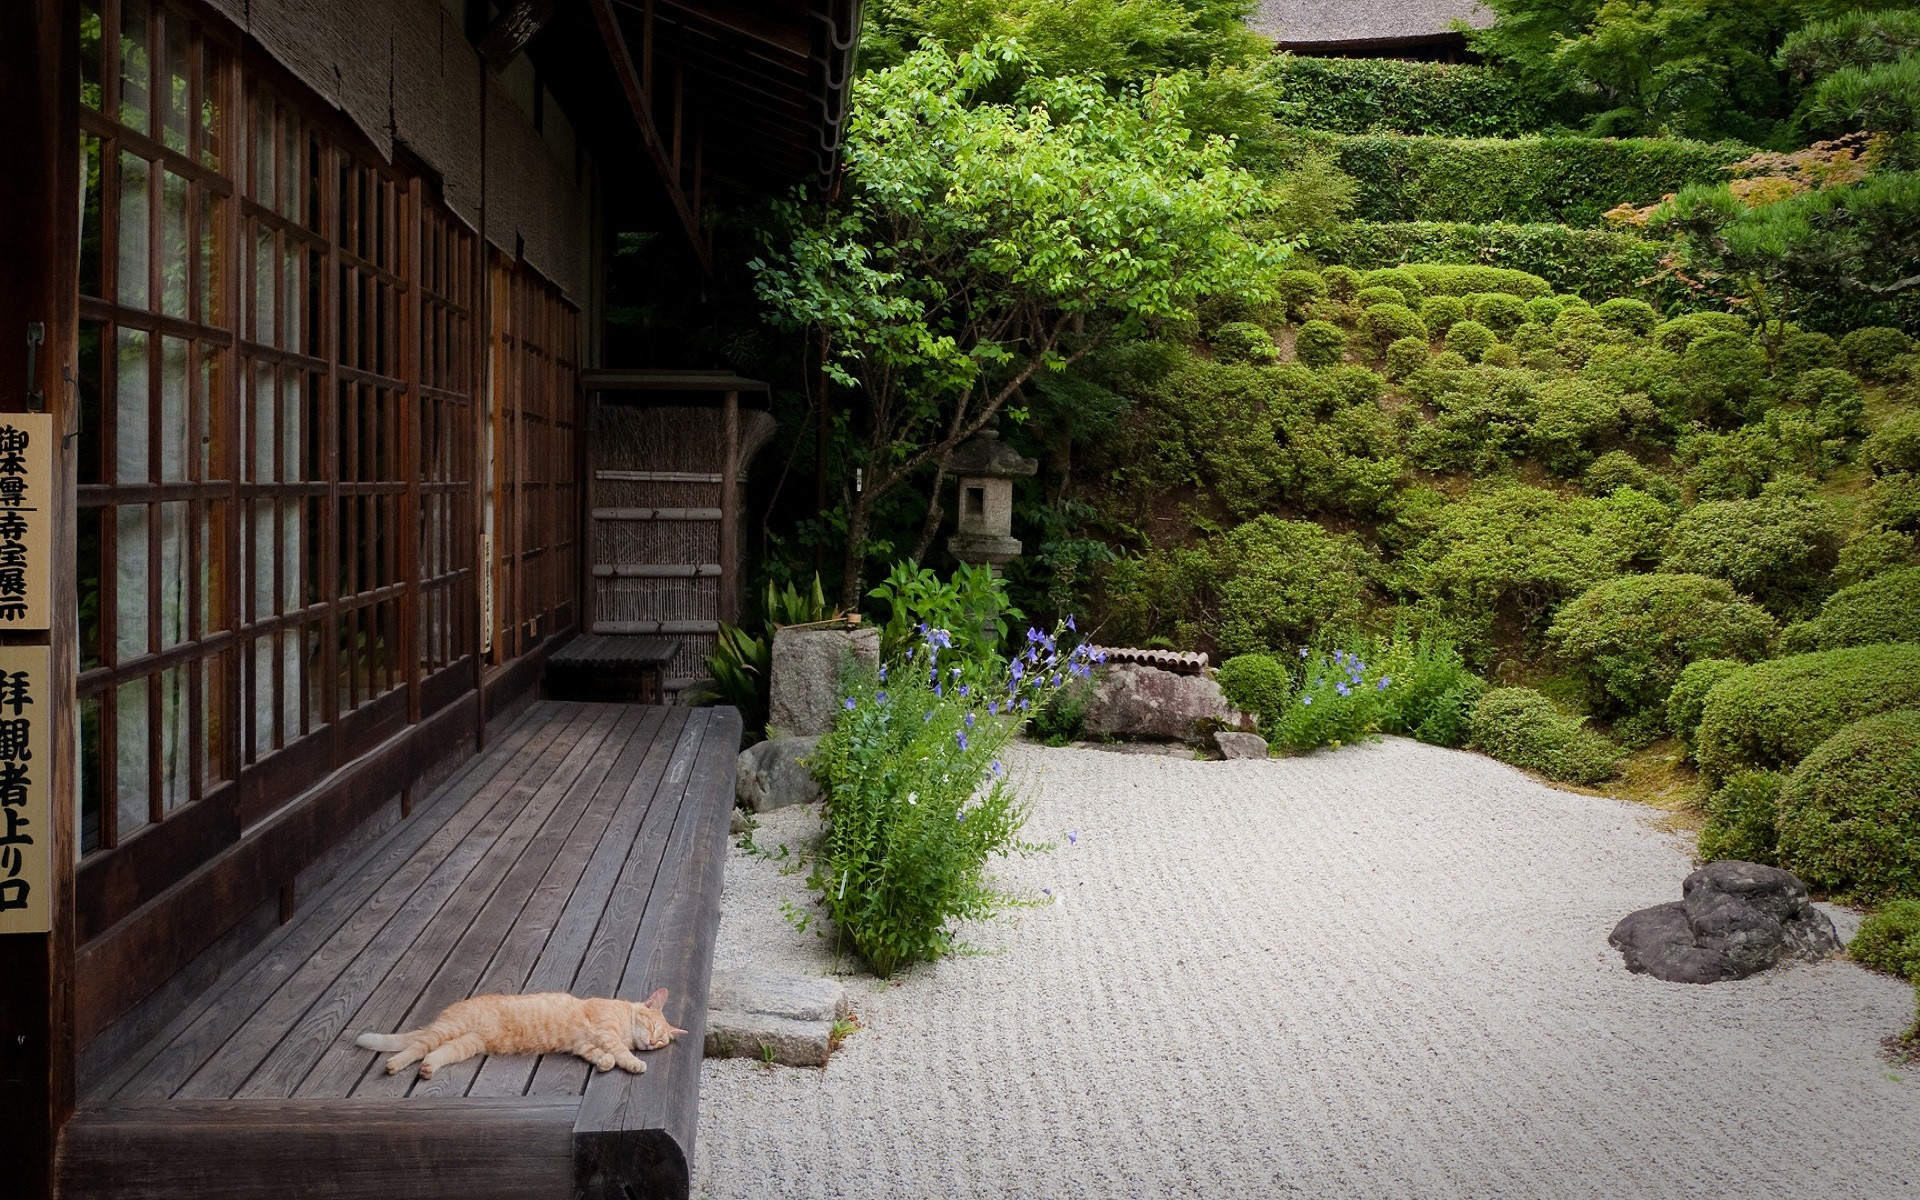 Забронировать столик в японском саду